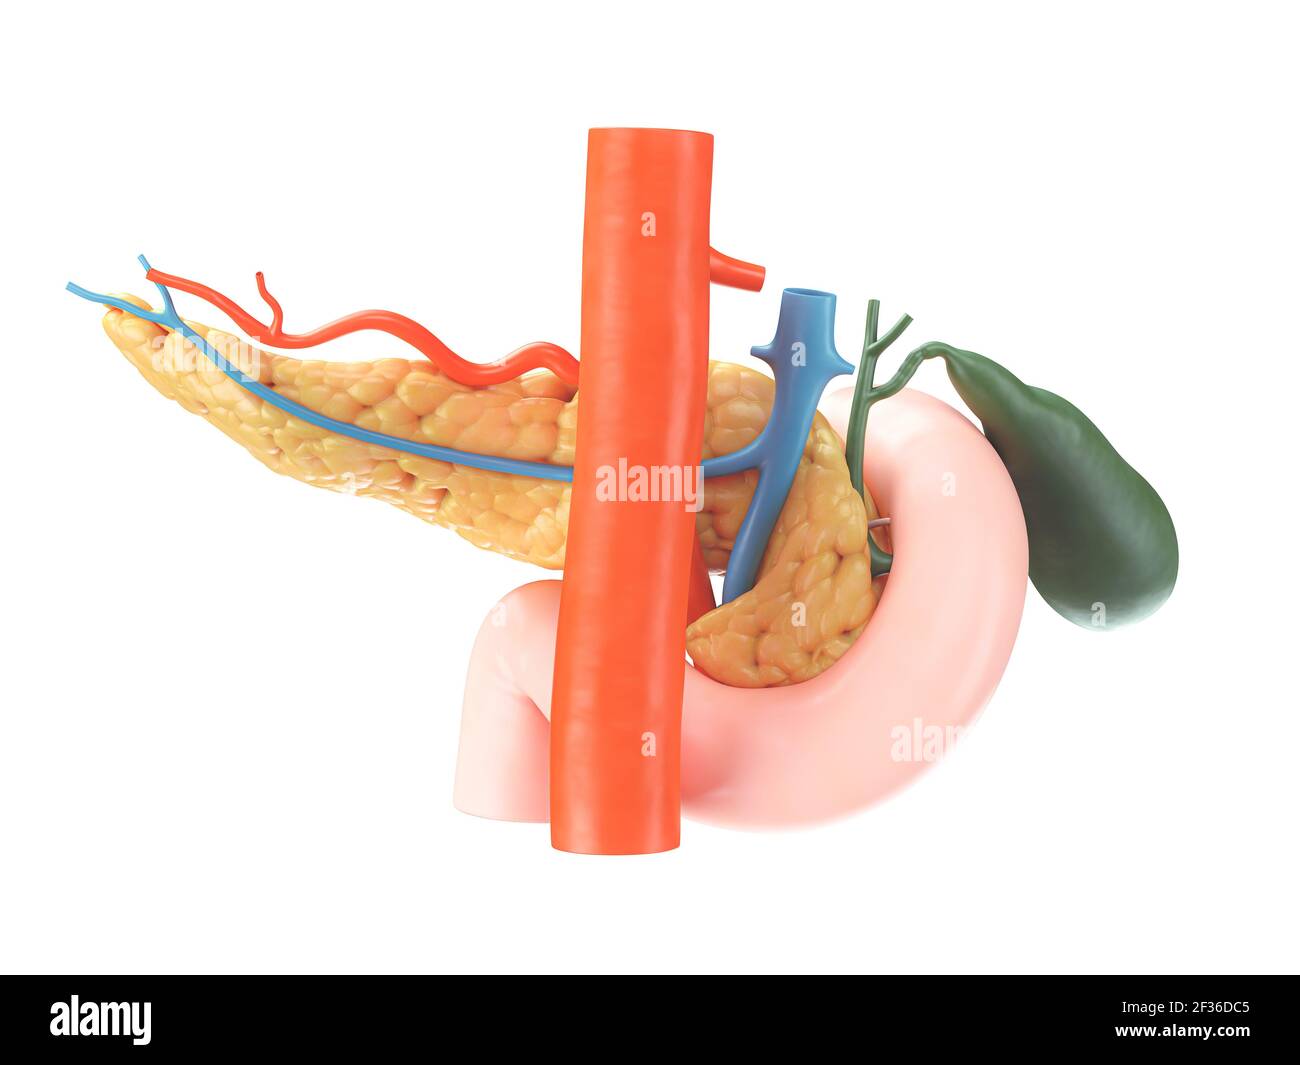 Illustration anatomique précise du pancréas humain avec vésicule biliaire, duodénum et vaisseaux sanguins. Vue arrière. rendu 3d Banque D'Images